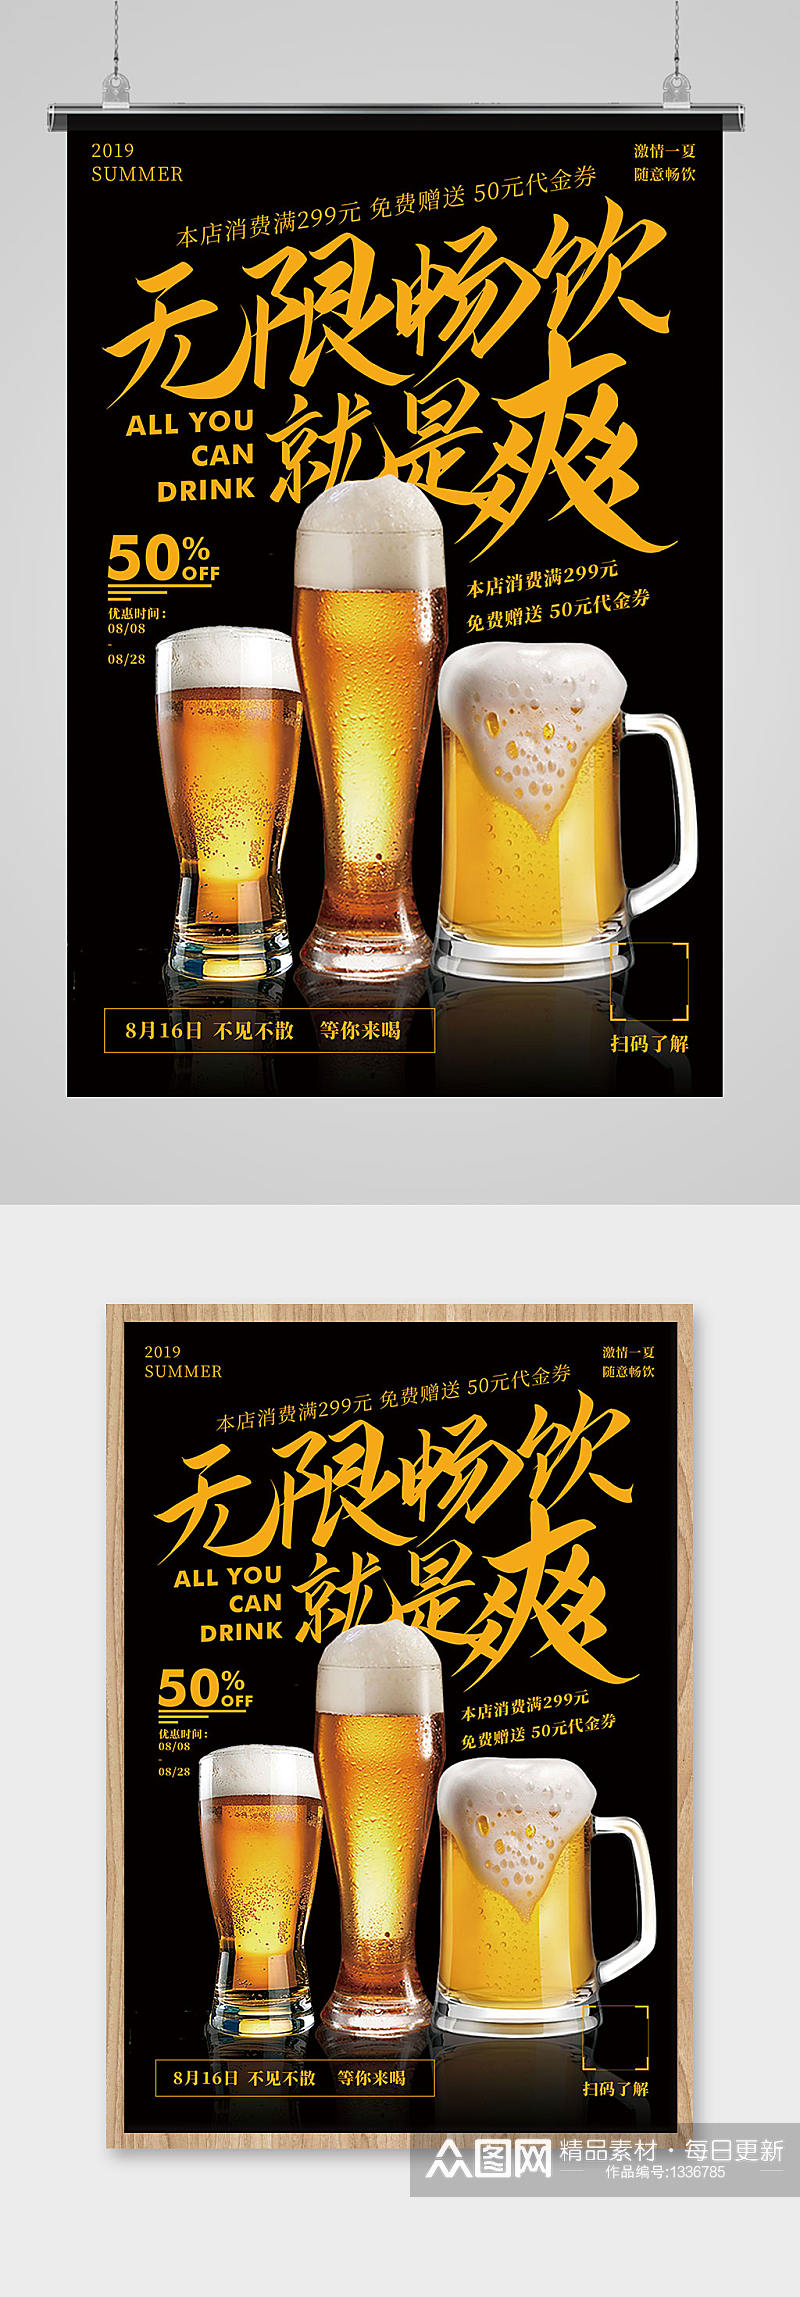 无限畅饮就是爽啤酒节促销宣传海报素材